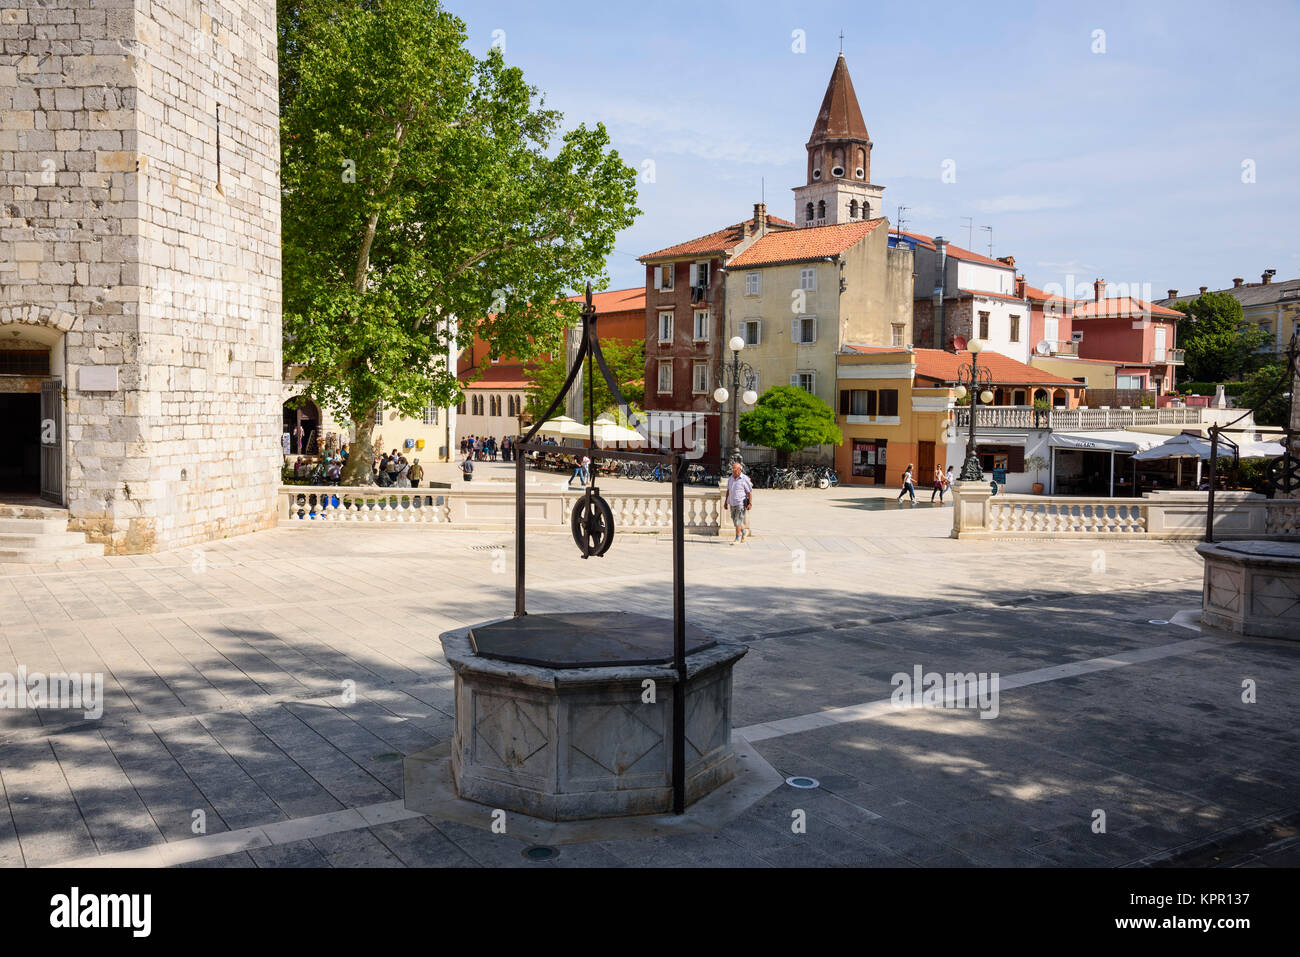 Old Town, Zadar, Croatia Stock Photo